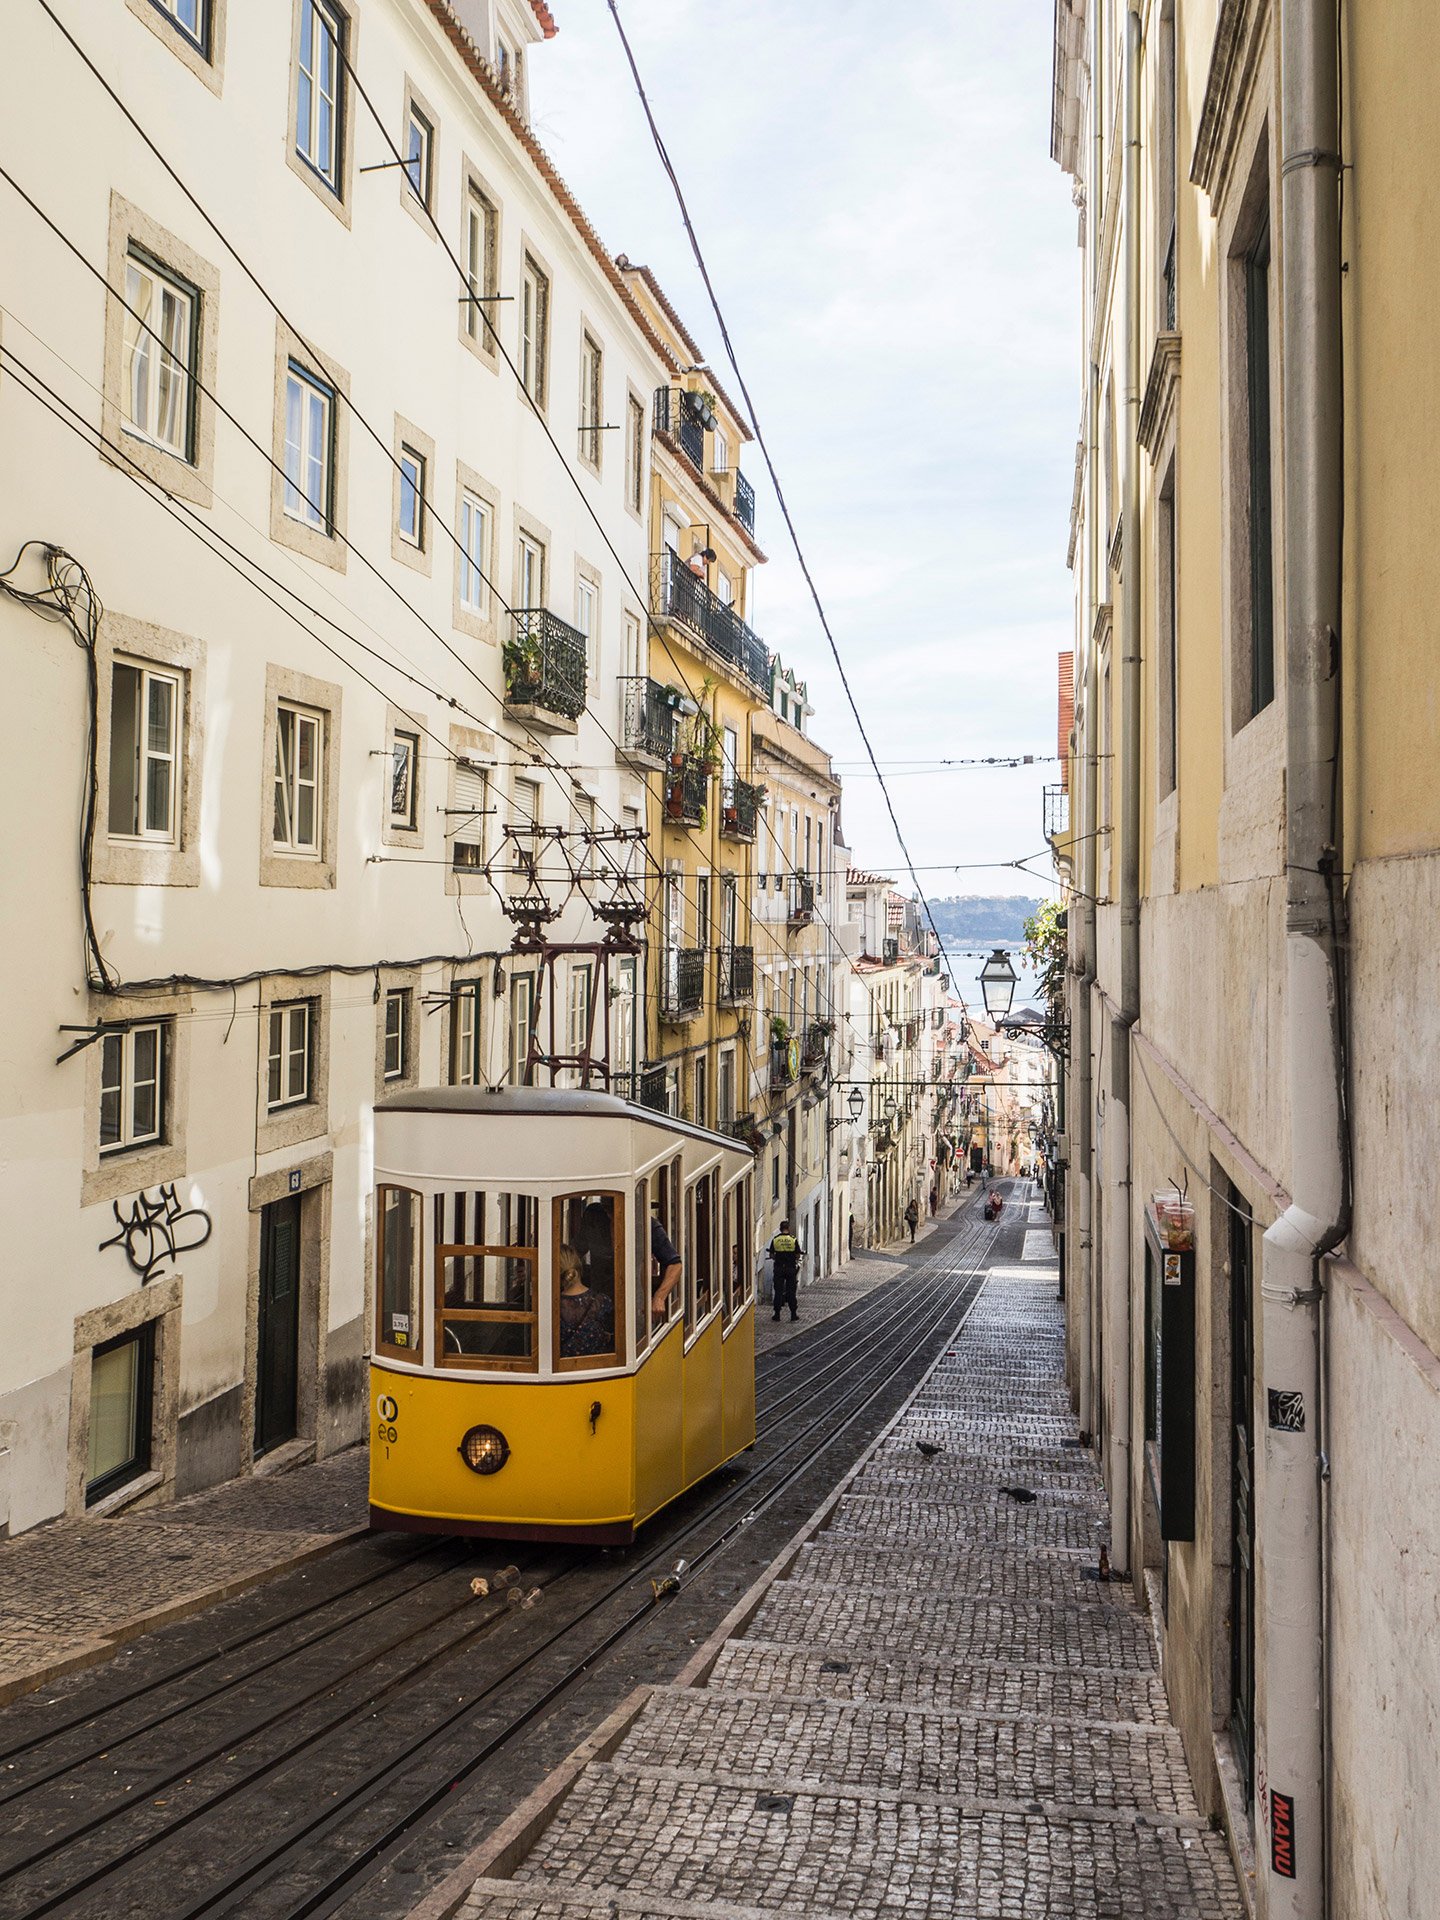 419/Photos-Lisboa/Rooftop/vali-sachadonig-406306.jpg